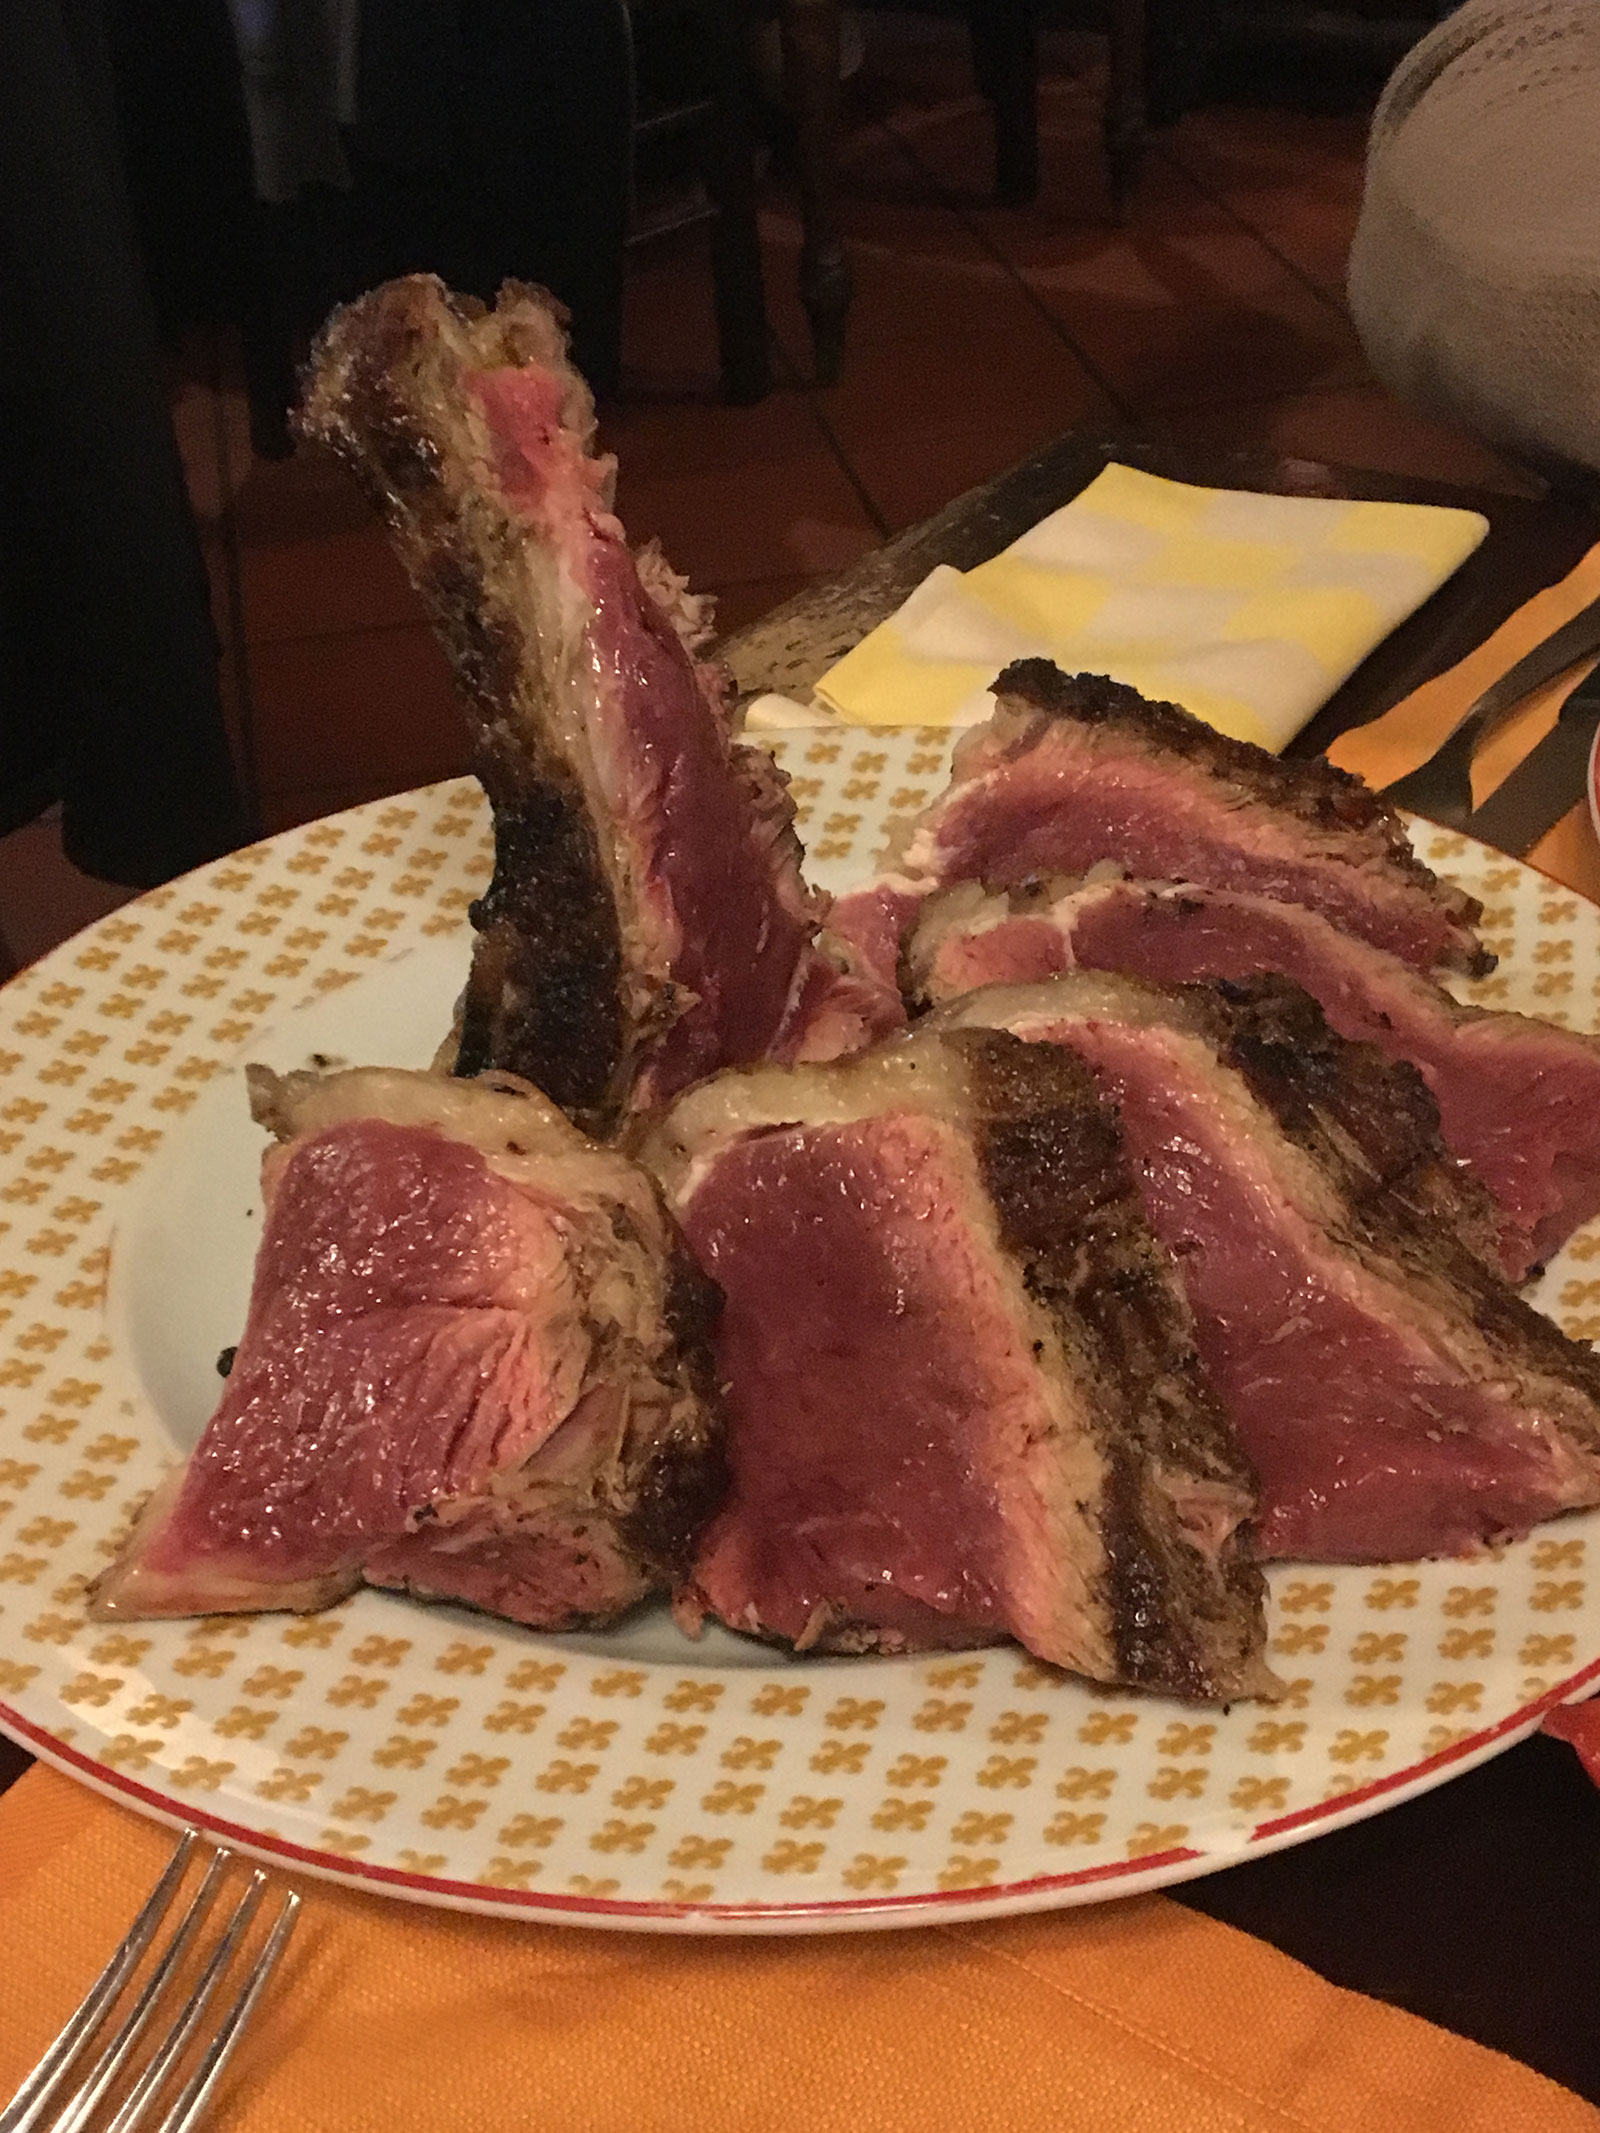 石川選手がフィレンツェで食べた“Bistecca alla fiorentina”